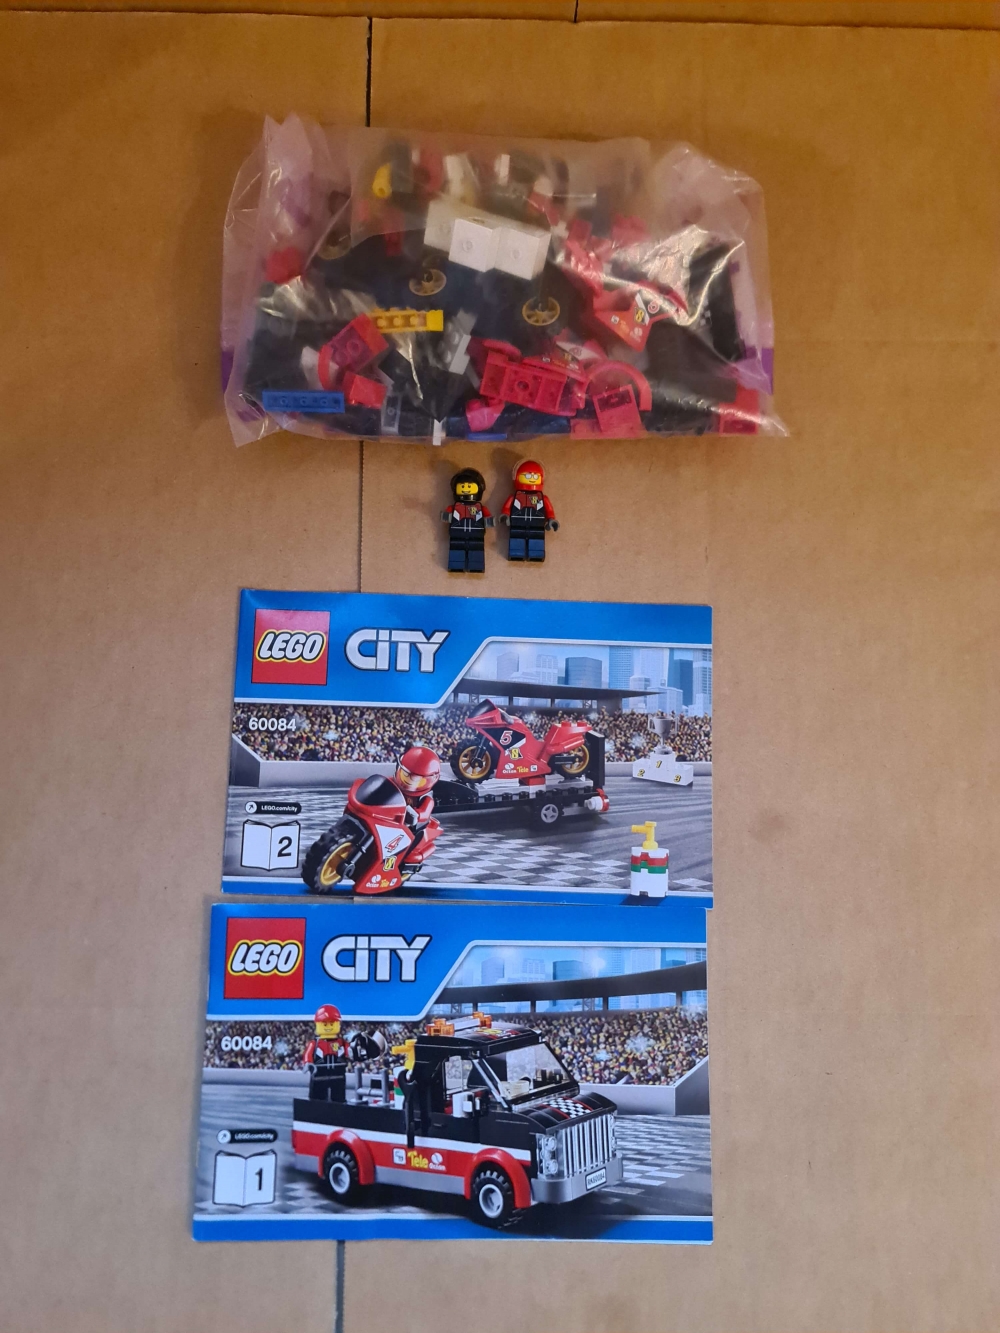 Sett 60084 fra Lego City serien.

Meget pent. Komplett med manualer.